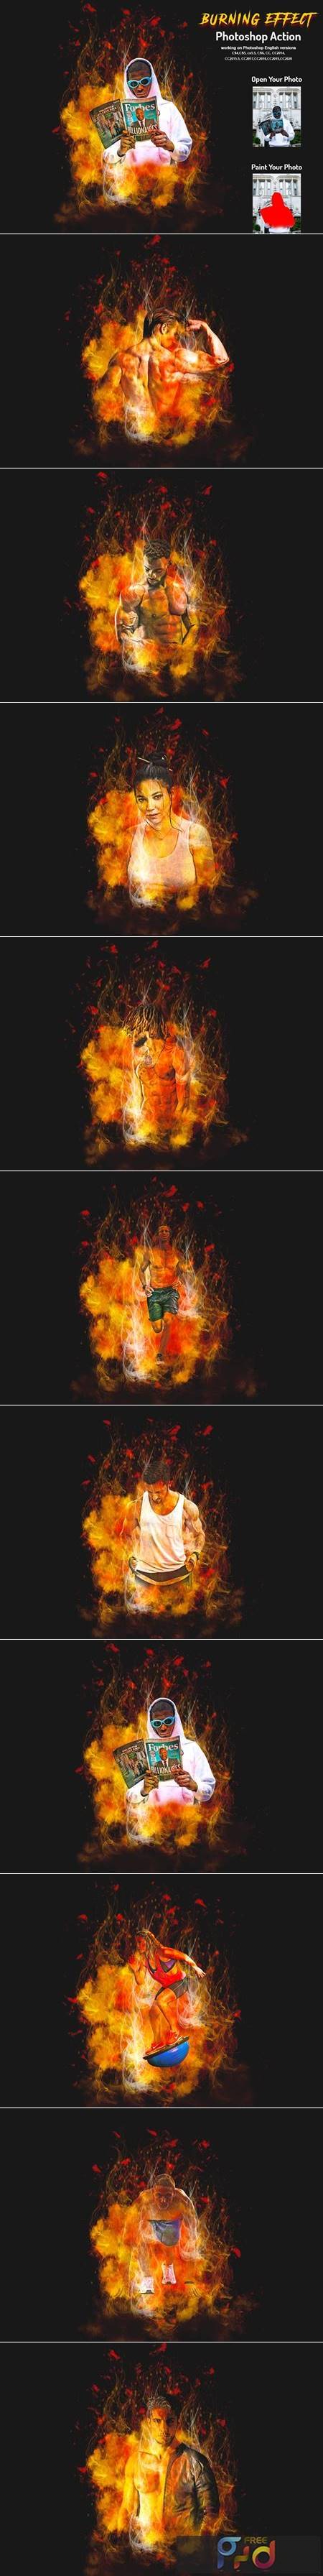 Burning Effect Photoshop Action